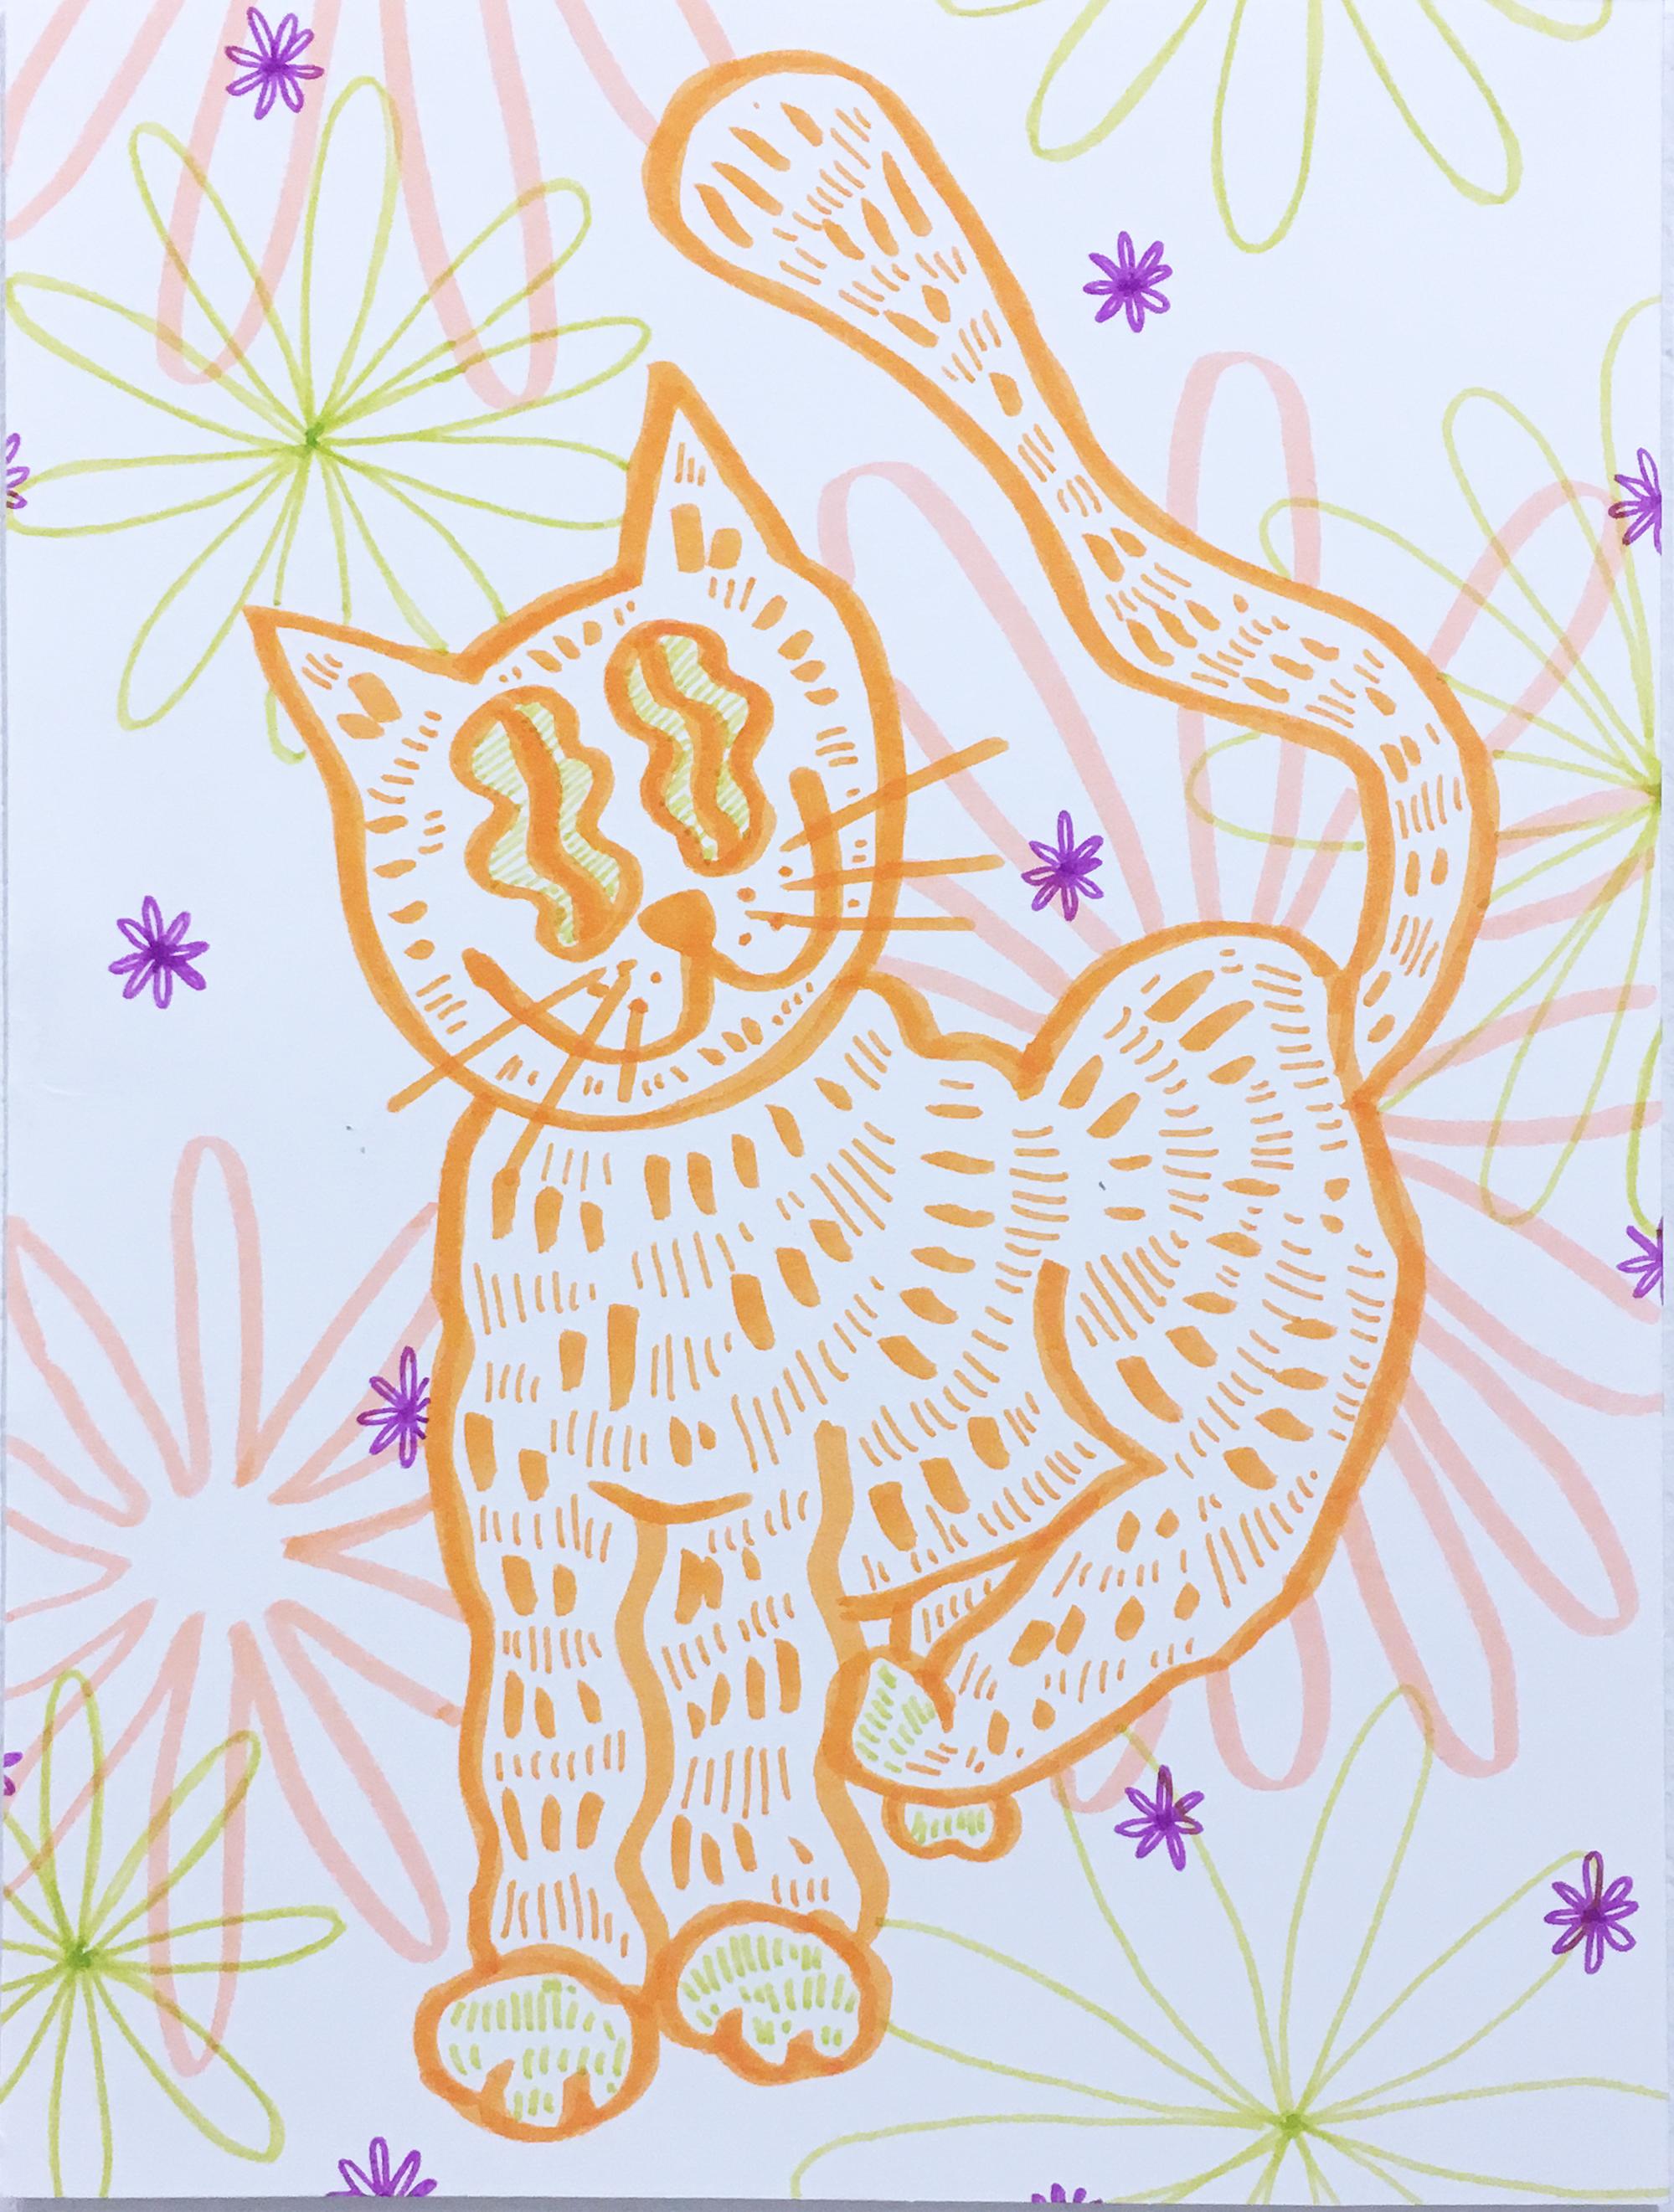 Soft and Fuzzy, dessin sur papier à l'aquarelle, chat avec fleurs, motif graphique ondulé